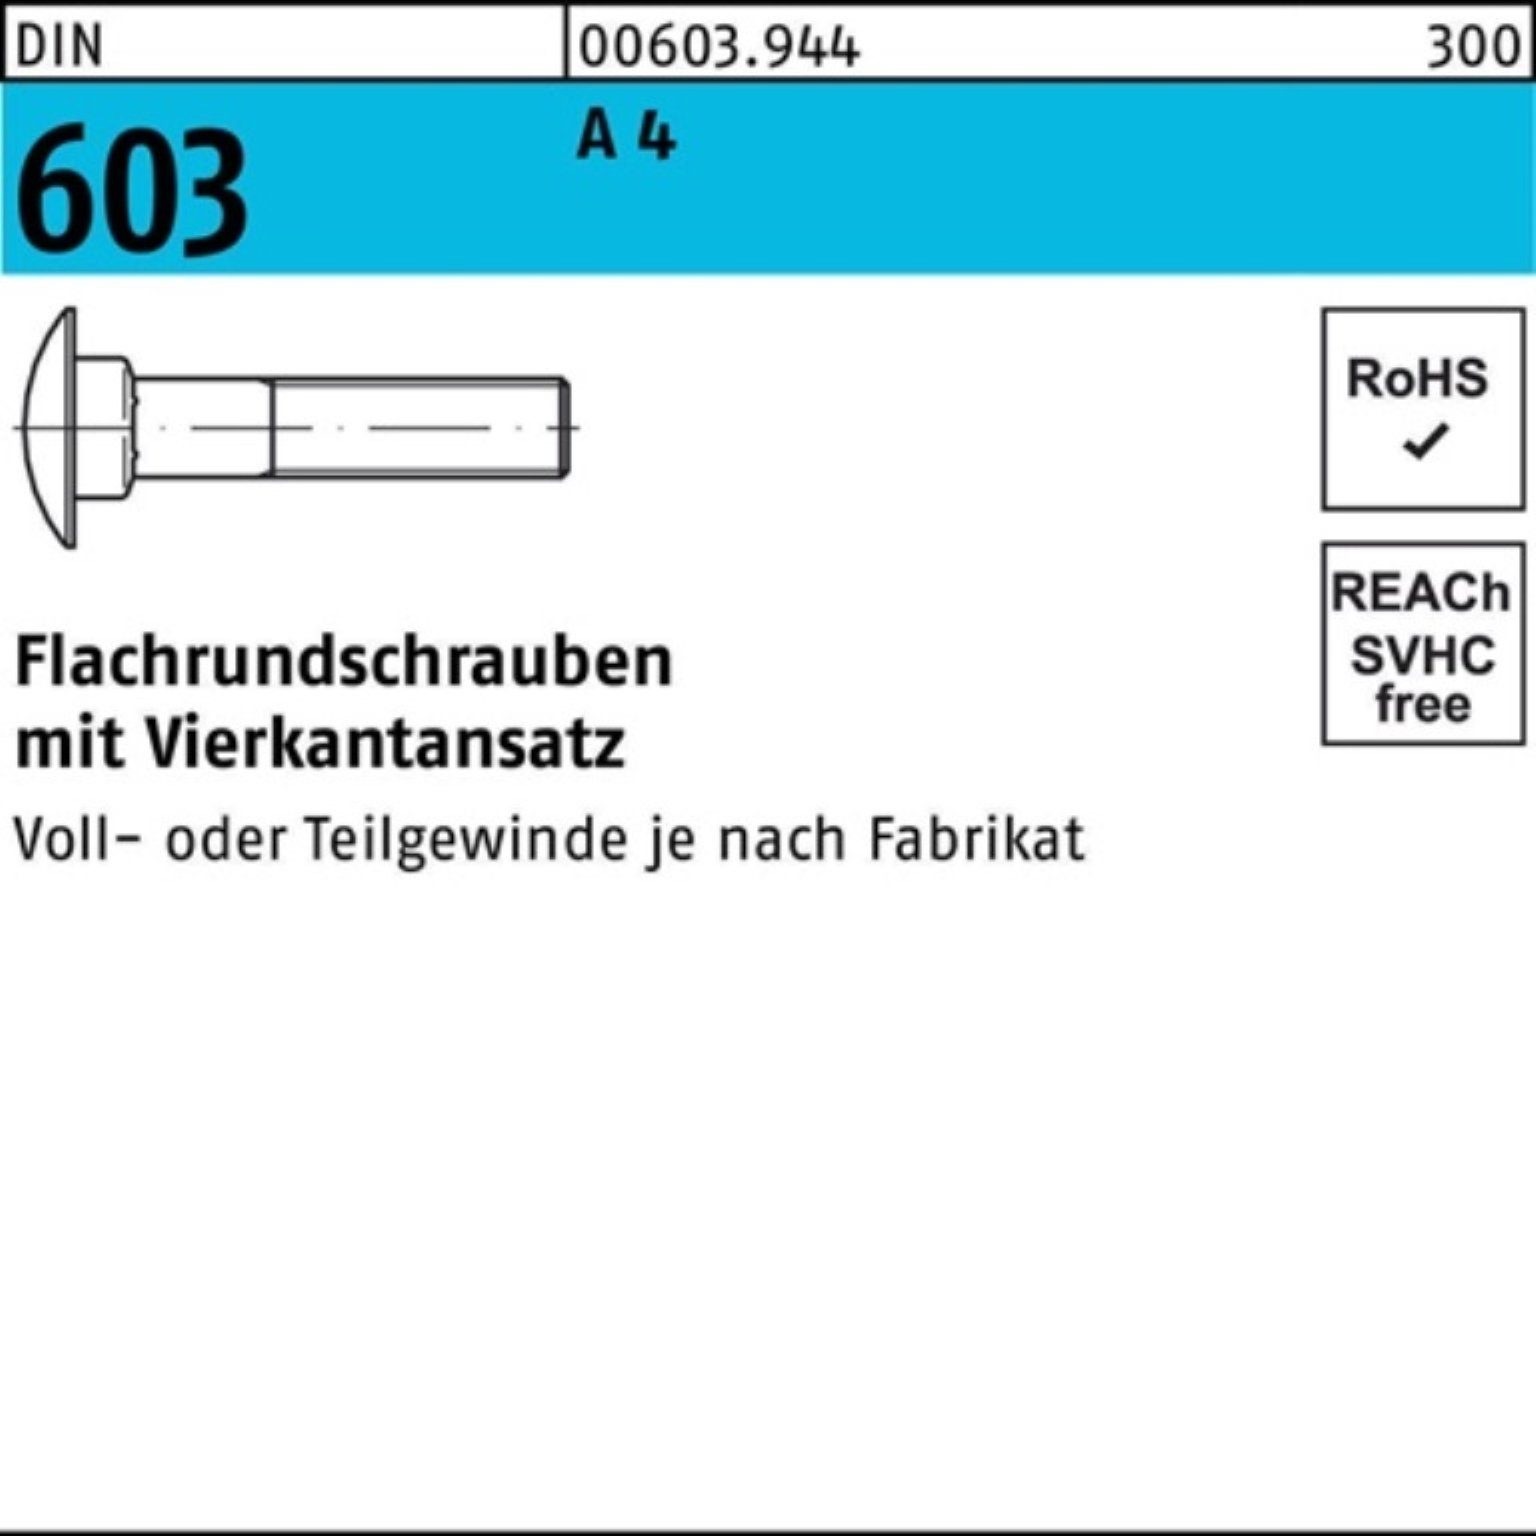 Schraube Pack 10 100er Reyher DIN 50 603 Stü Flachrundschraube A M8x 4 Vierkantansatz